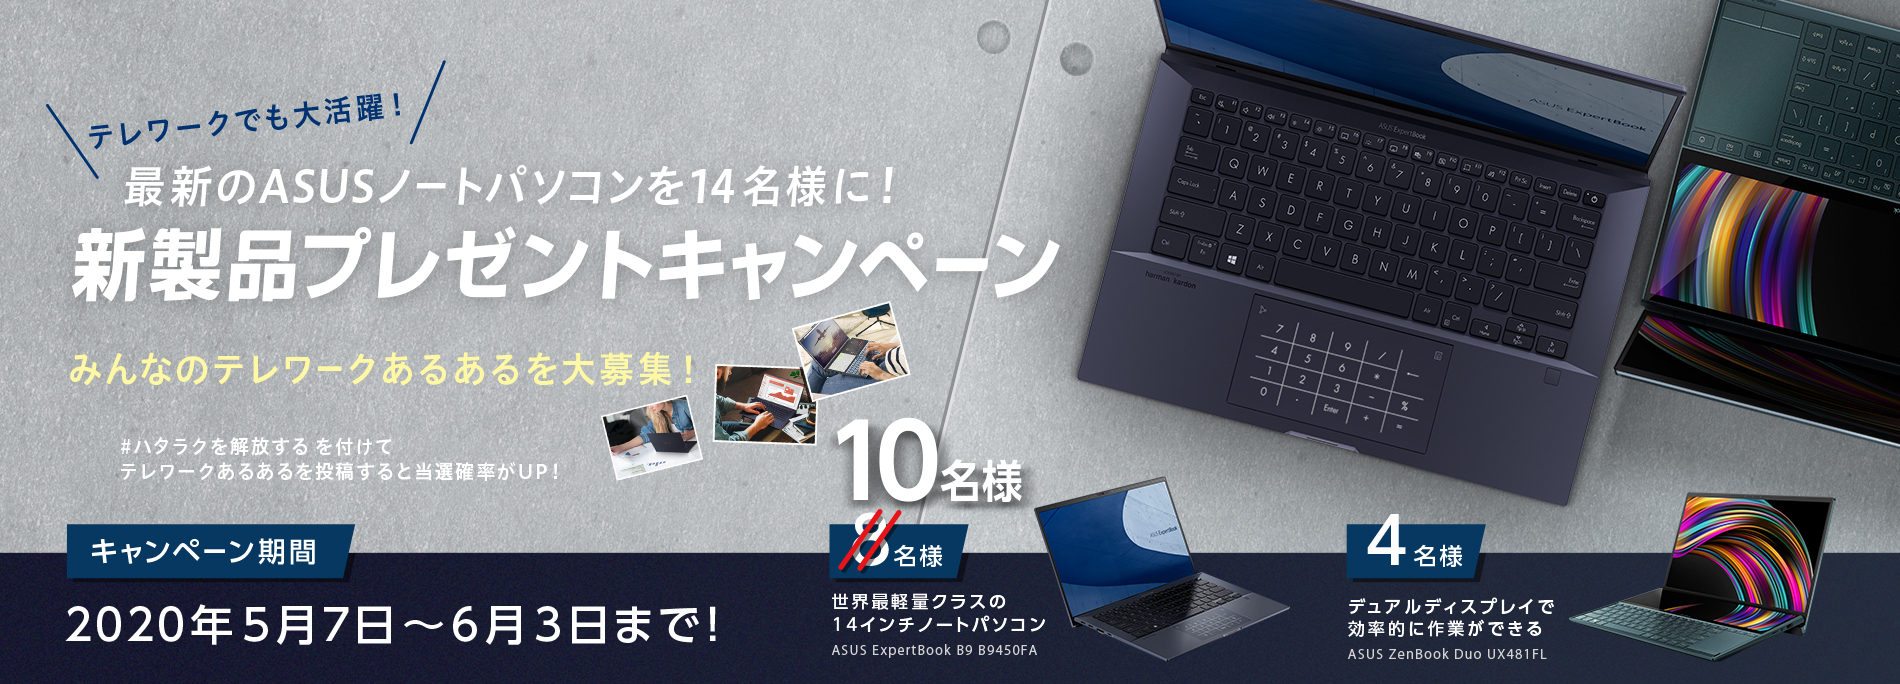 最新のasusノートパソコンが14名様に当たる 新製品プレゼントキャンペーン